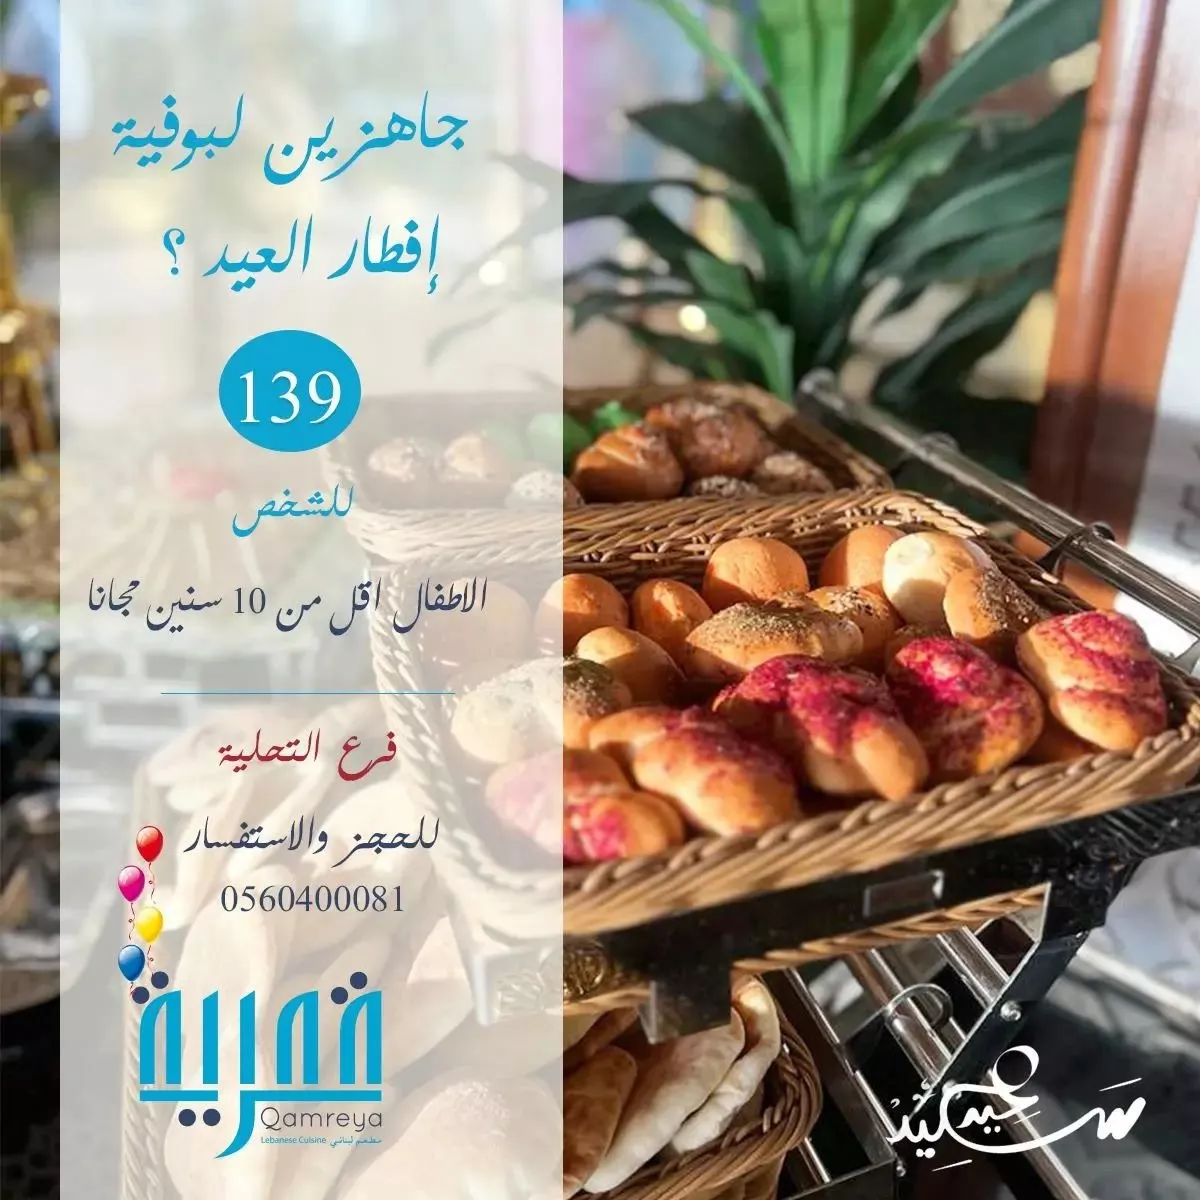 هذه هي عروض عيد الفطر في جدة لتجربة مميّزة في اجازة العيد